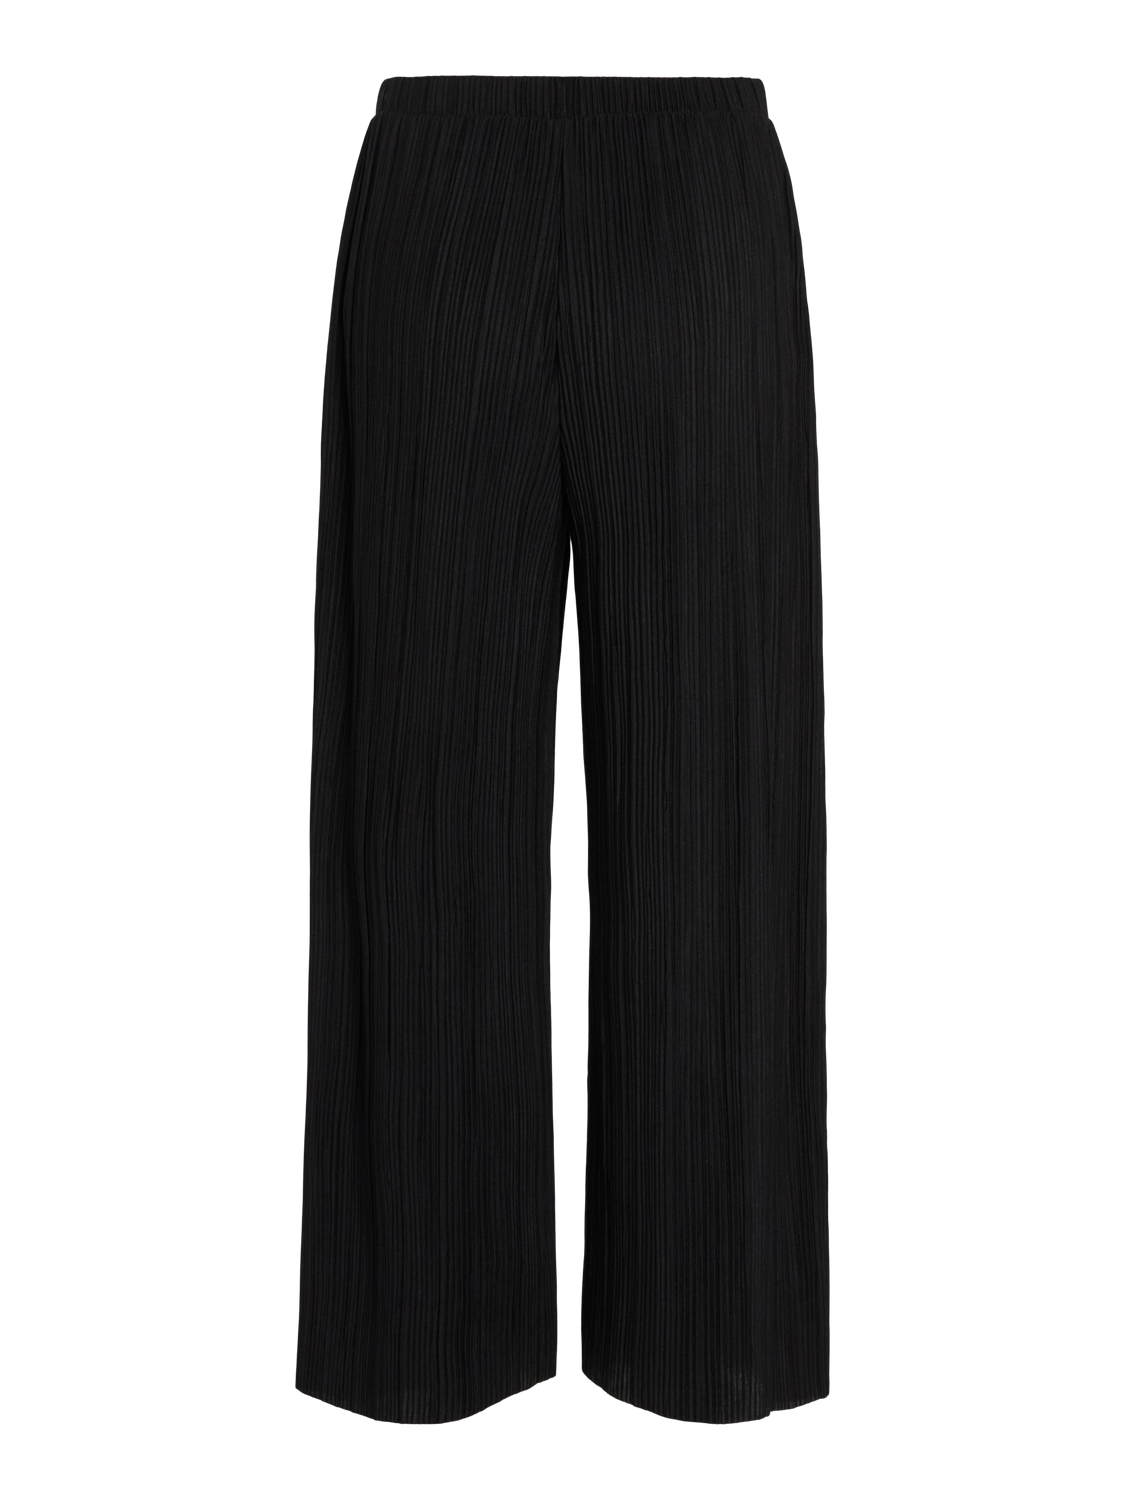 VIPLISA Pants - Black Beauty